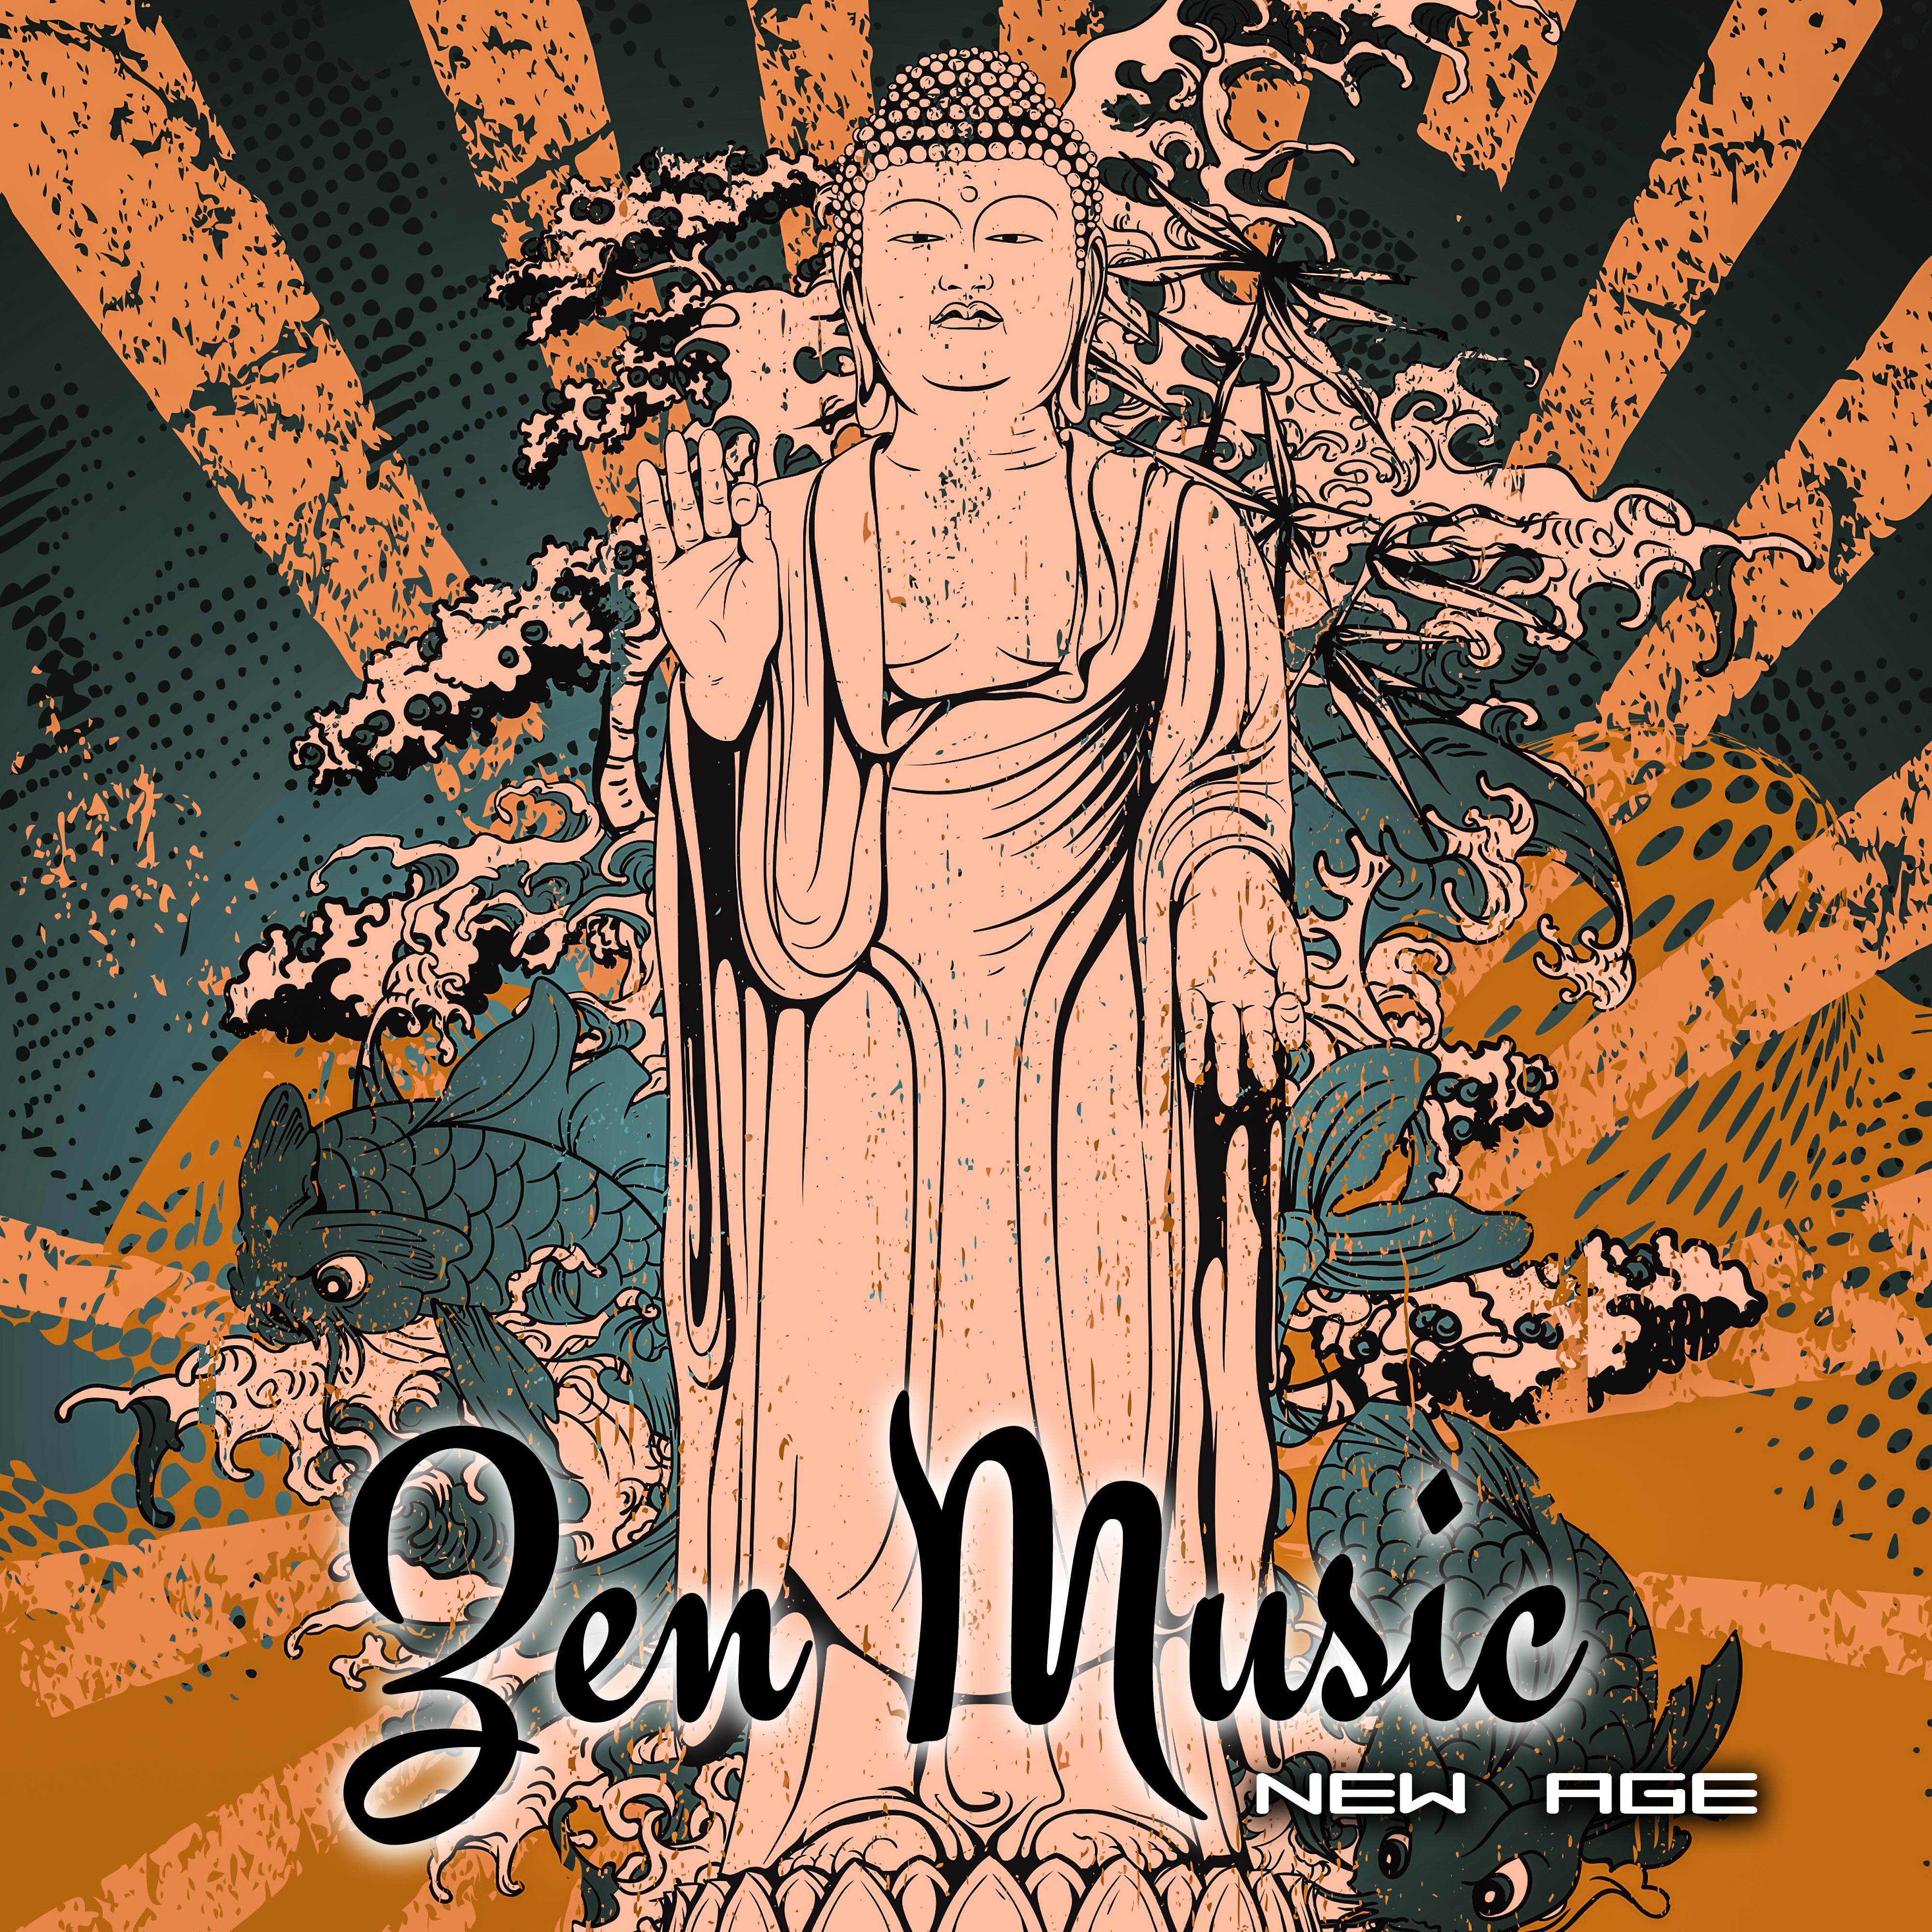 New Age Zen Music – Calm Sounds to Relax, Meditation Zen Sounds, Inner Peace, Spiritual Rest